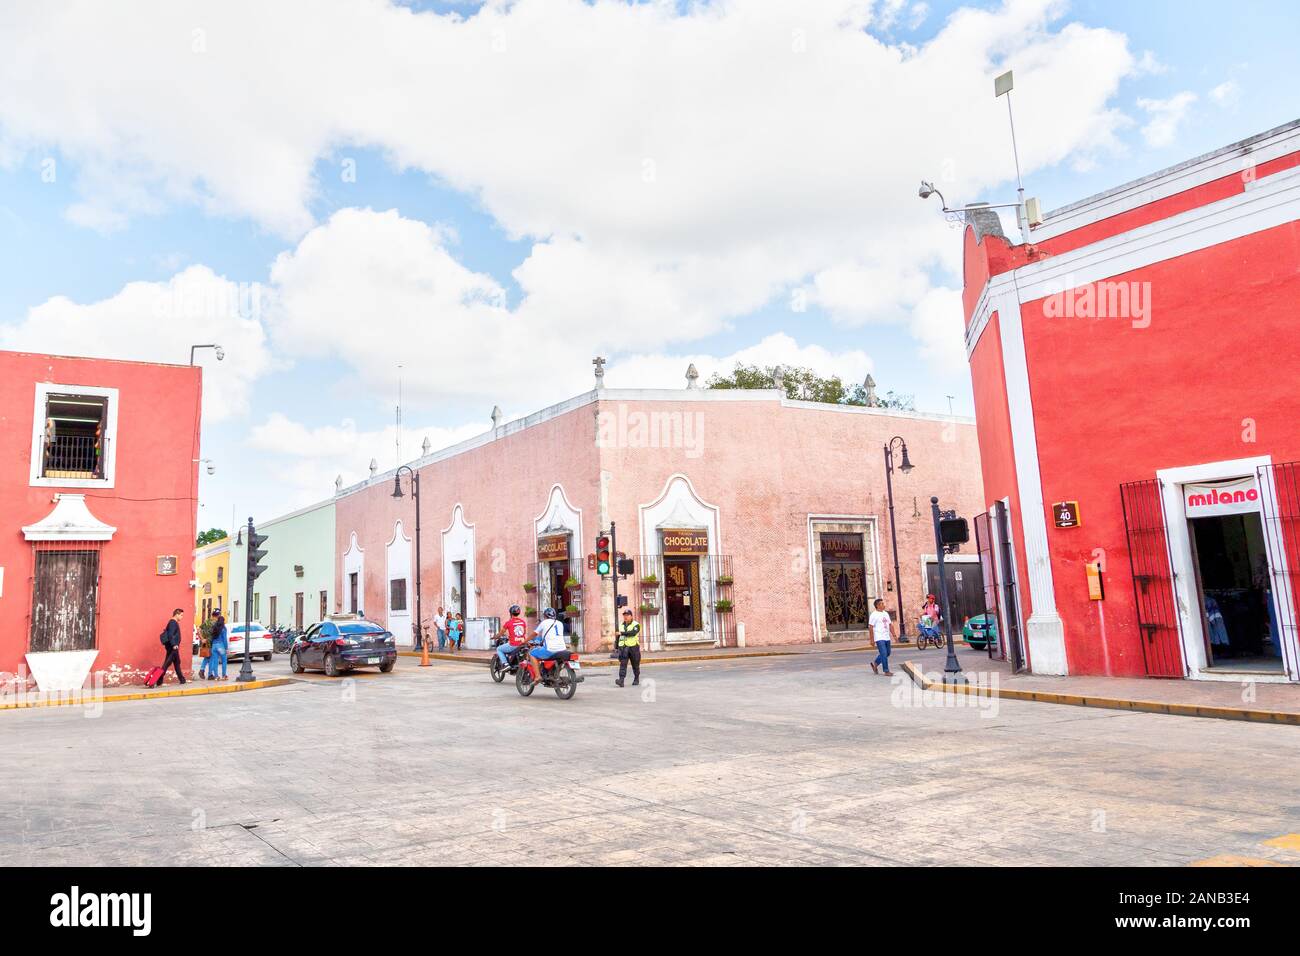 VALLADOLID, MEXIQUE - DEC 23, 2019 : Maya historique ville de Valladolid, dans l'État mexicain du Yucatan. Jusqu'au 20ème siècle, il a été le plus importan Banque D'Images